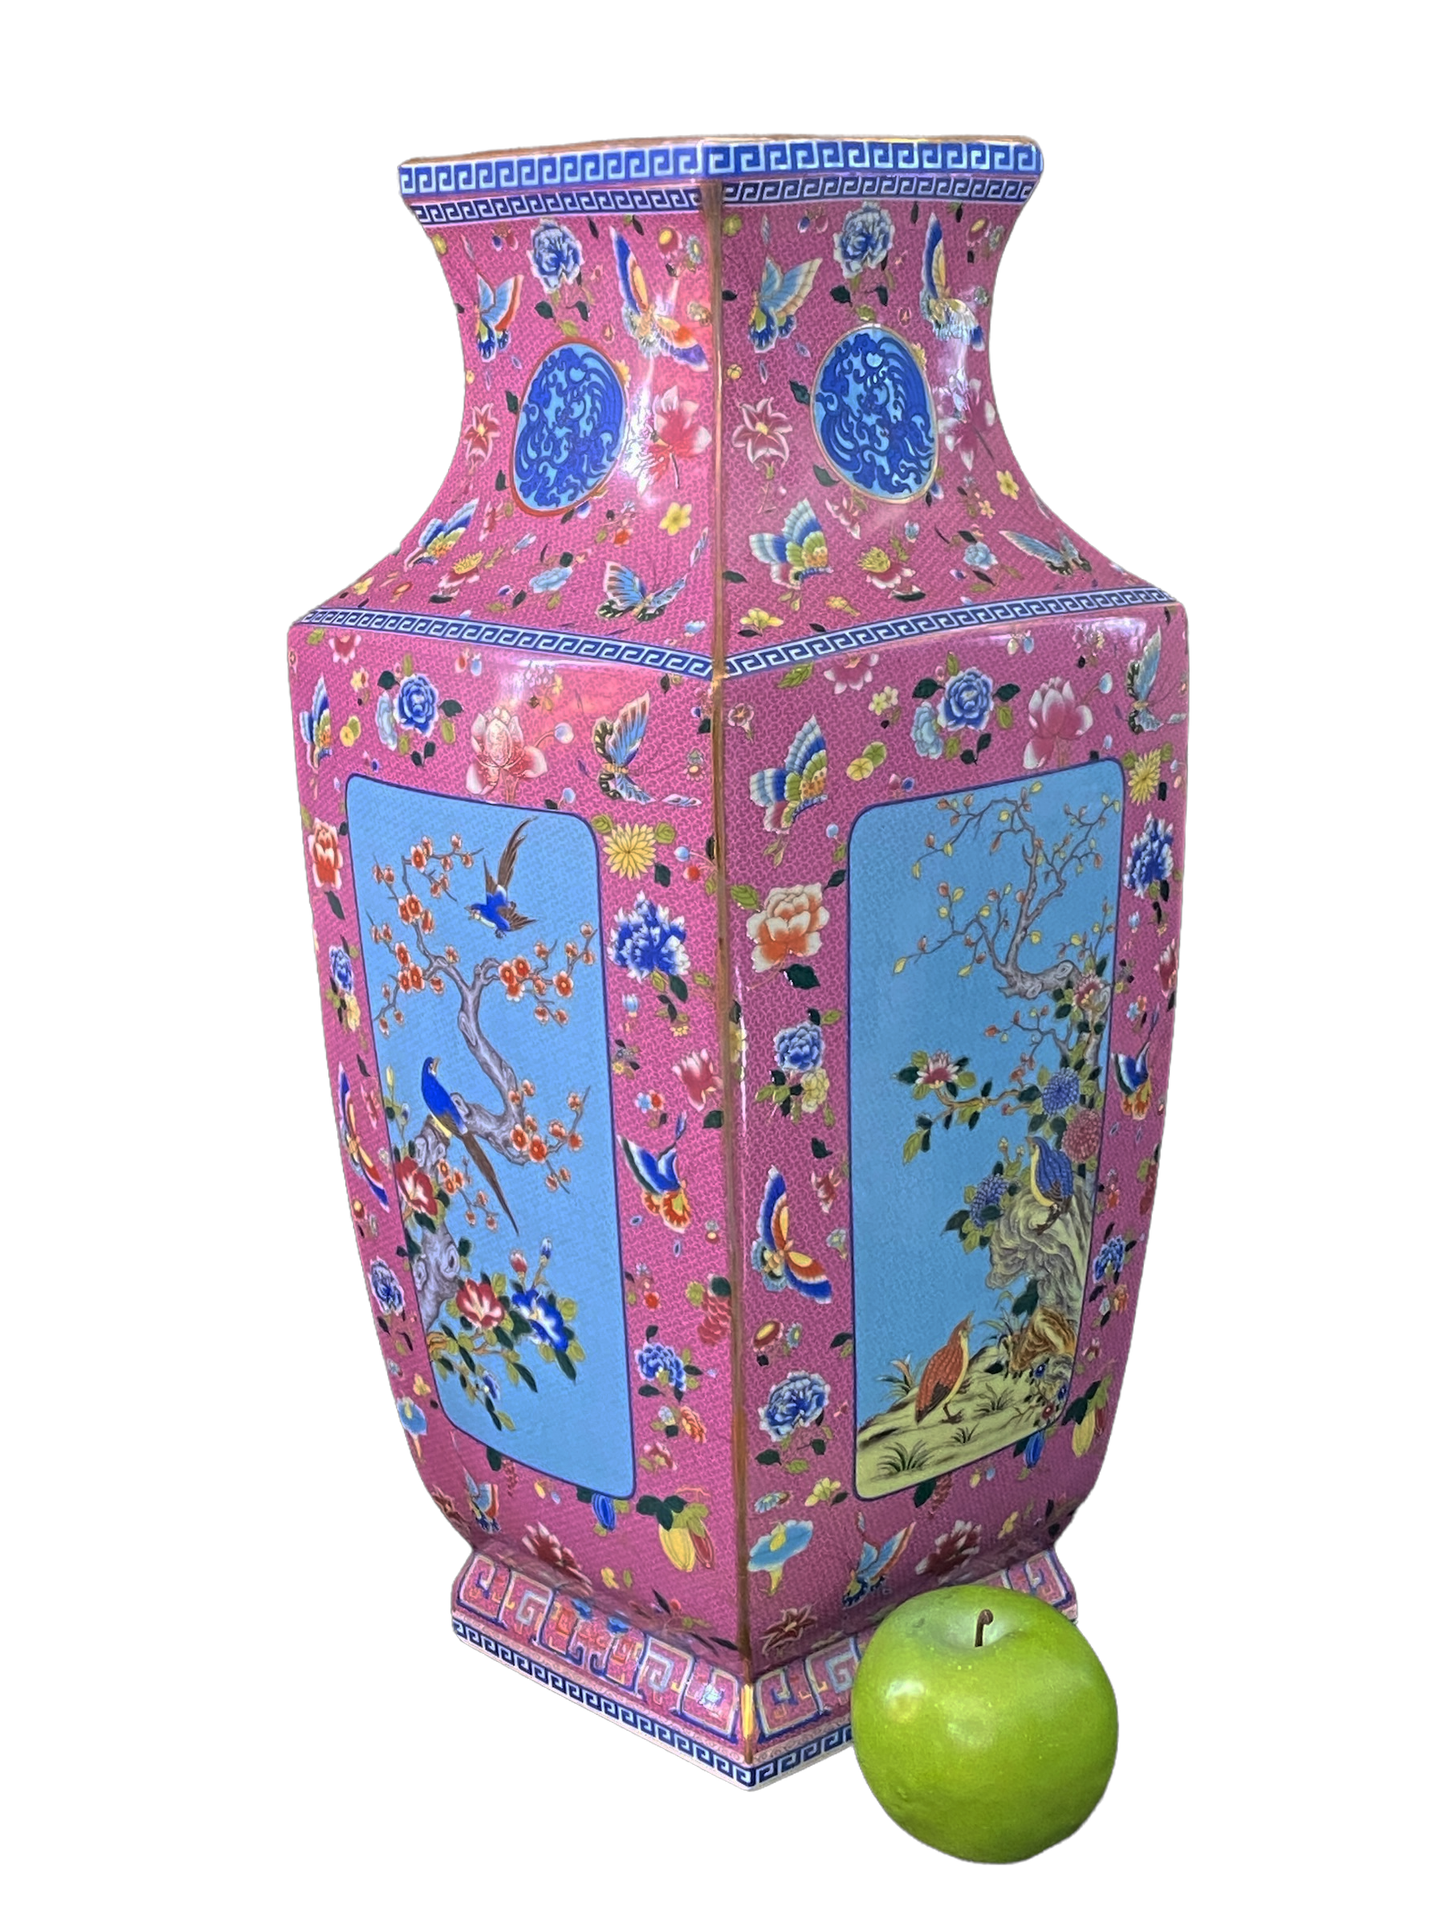 #3202Chinoiserie Porcelain Famille Rose Vase